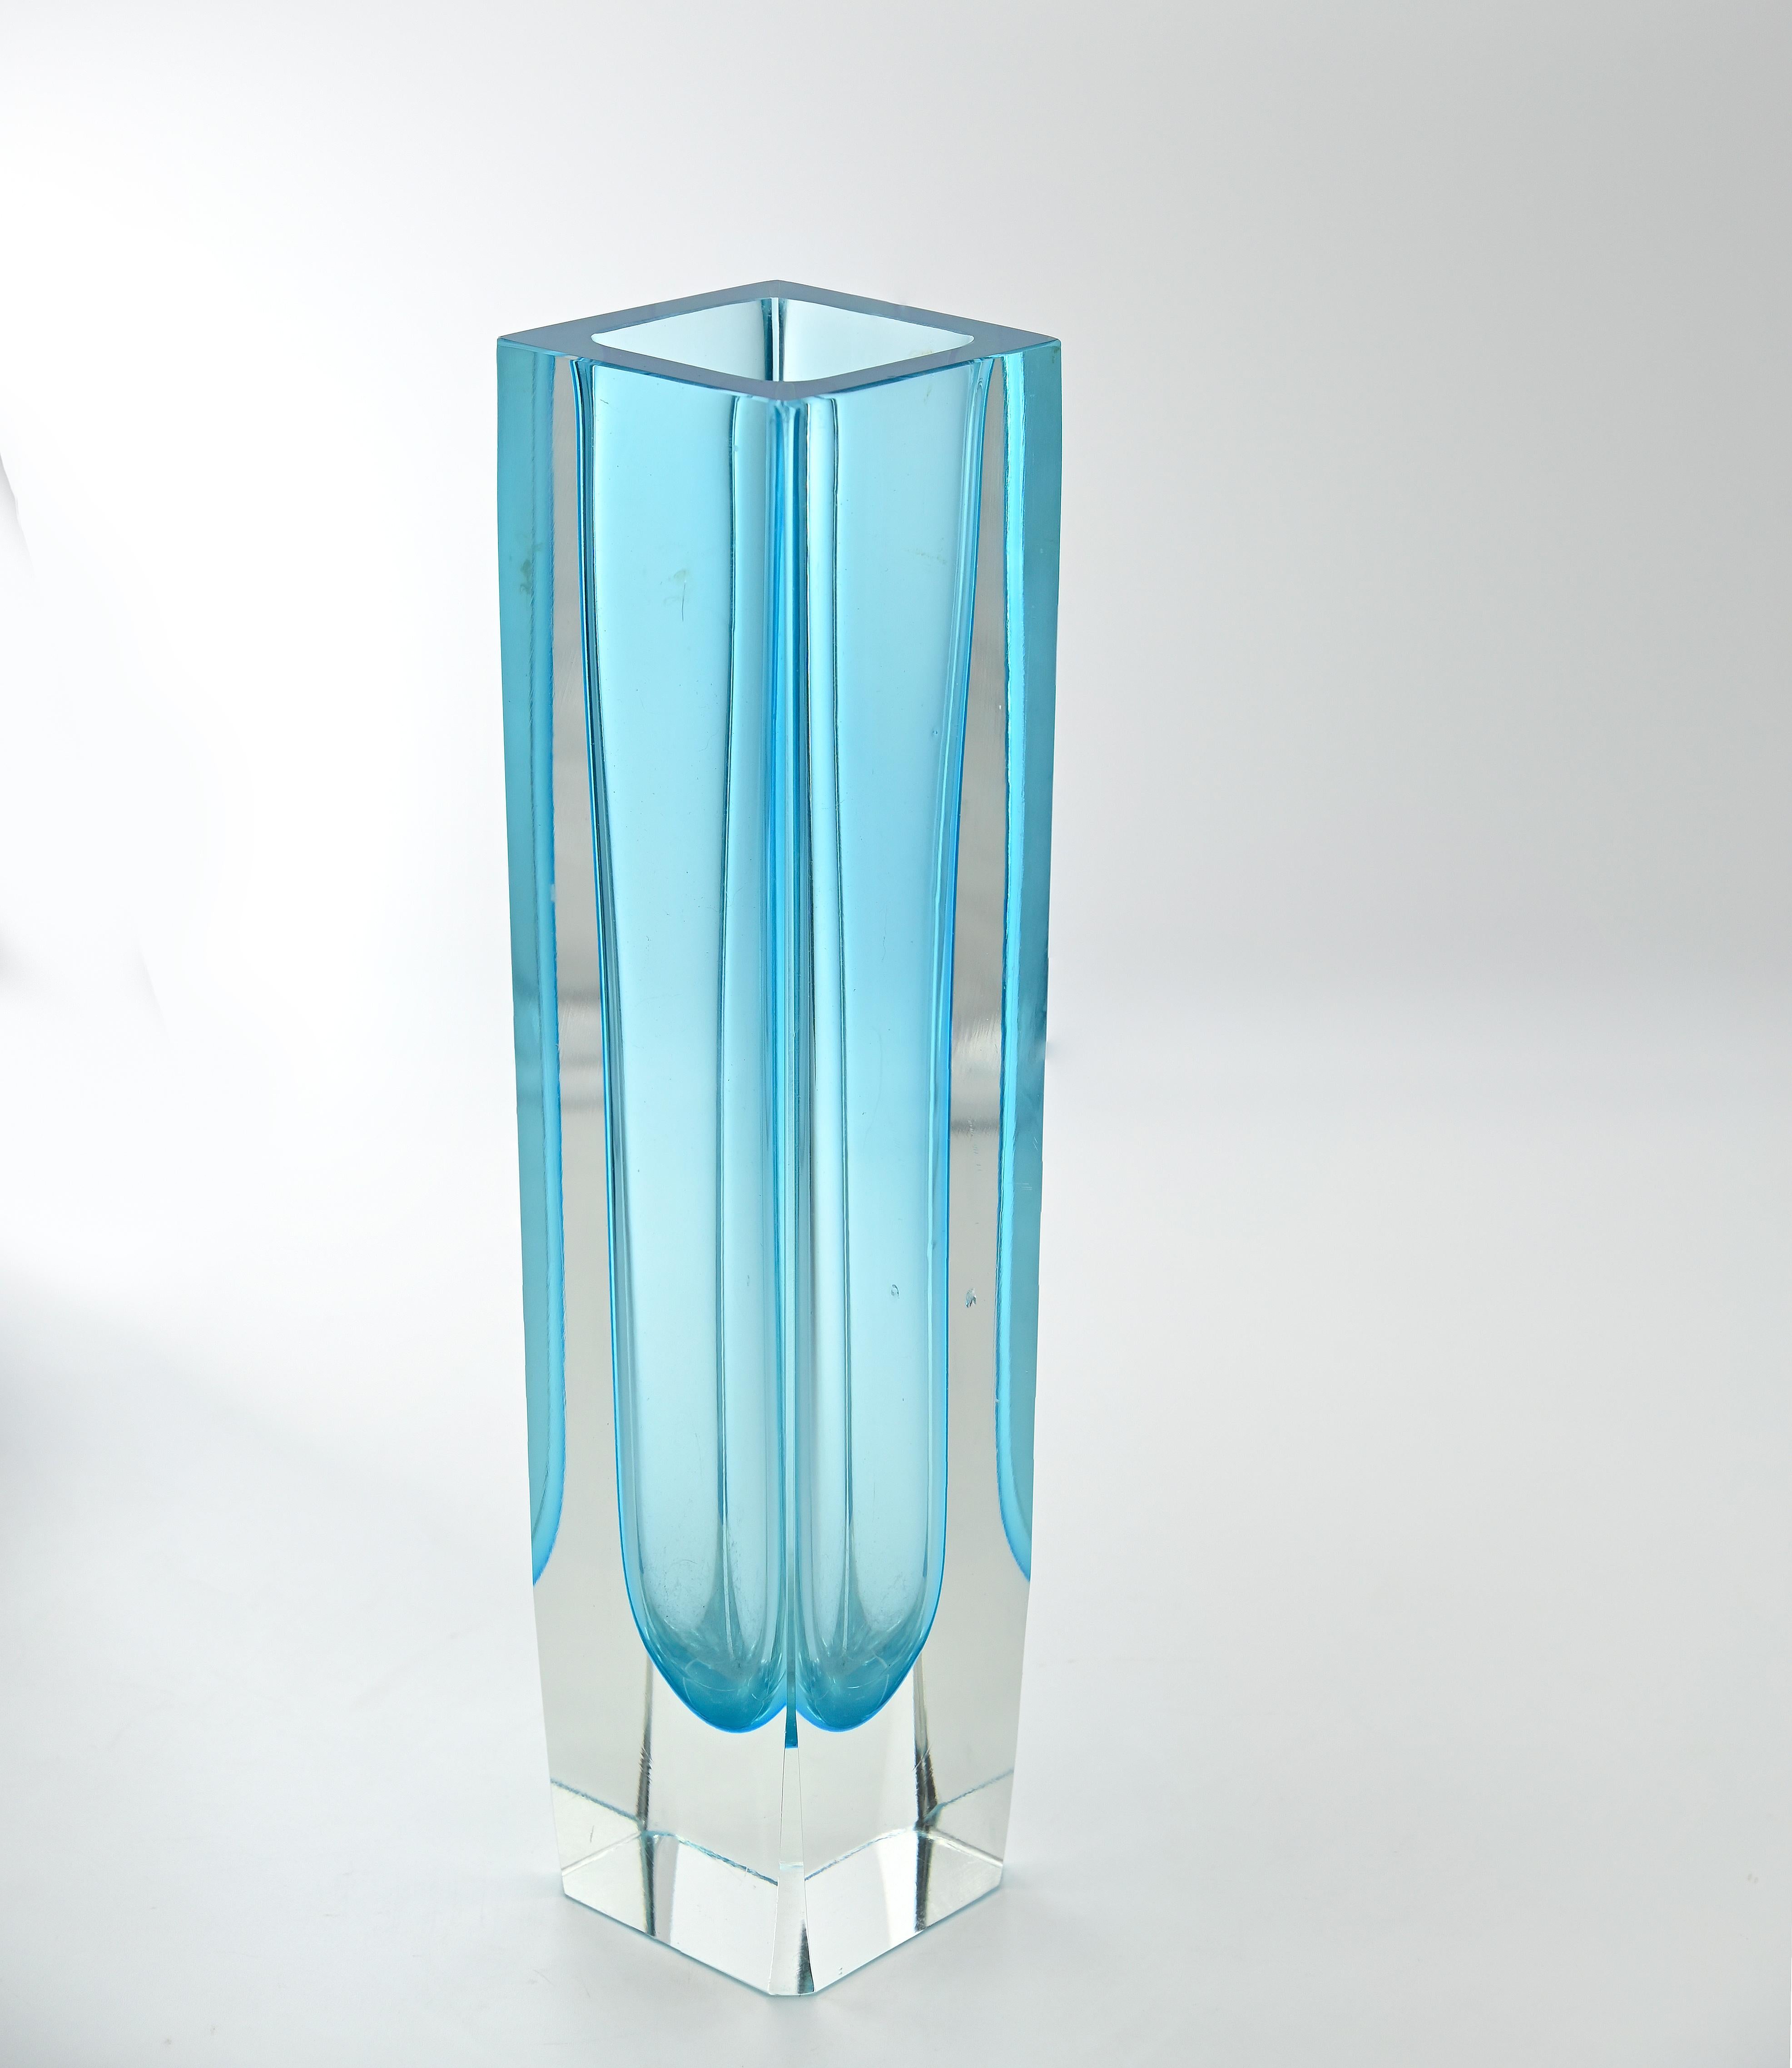 Die Vase aus Murano-Glas ist ein dekoratives Objekt aus den 1970er Jahren. 

Handgefertigt, Farbe hellblau.

30 x 7,5 x 7,5 cm.

Gute Bedingungen!